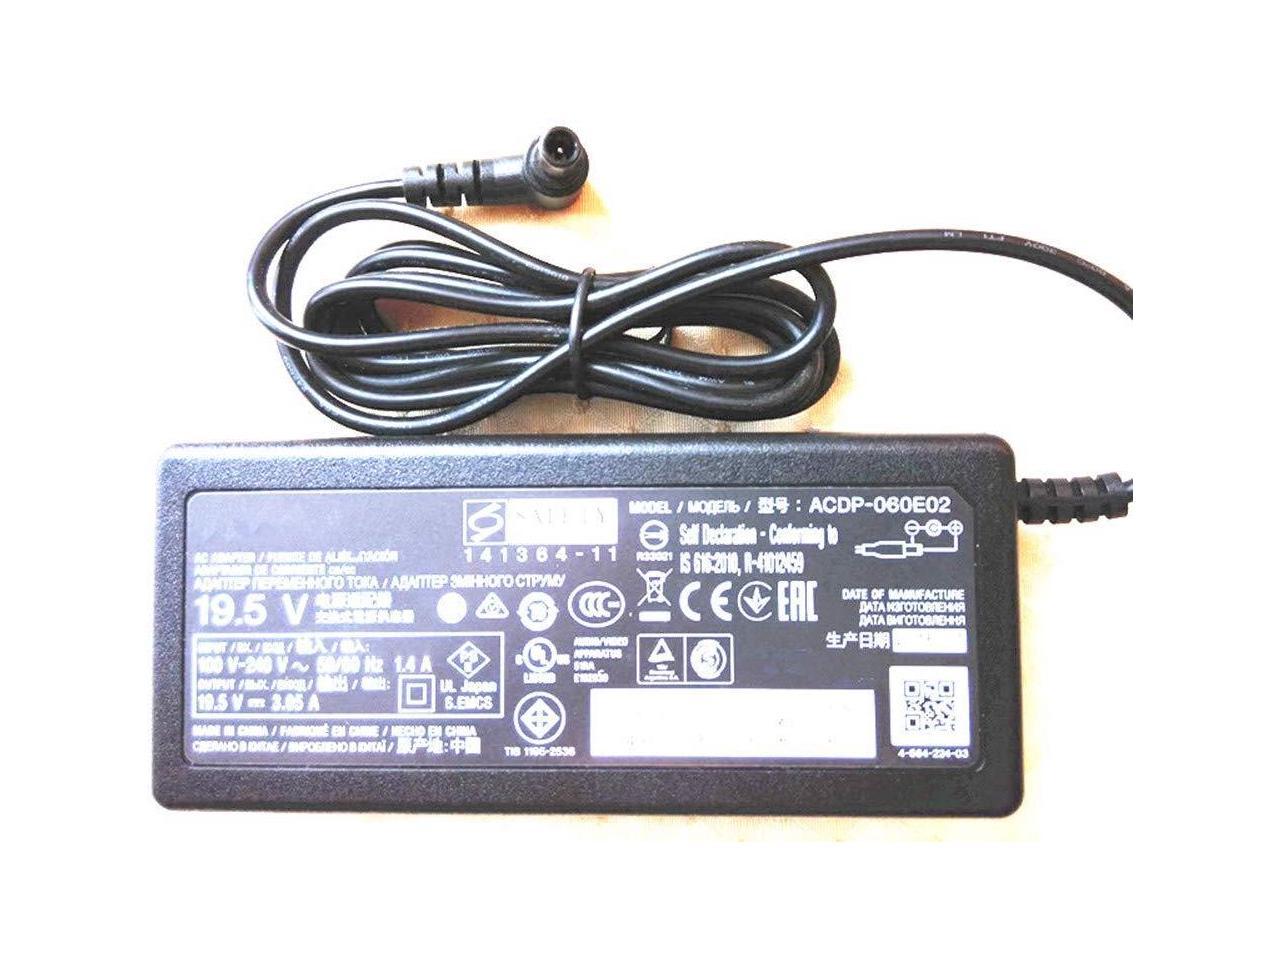 SONY ACDP-060E02 TV POWER AC ADAPTER ORIGINAL 